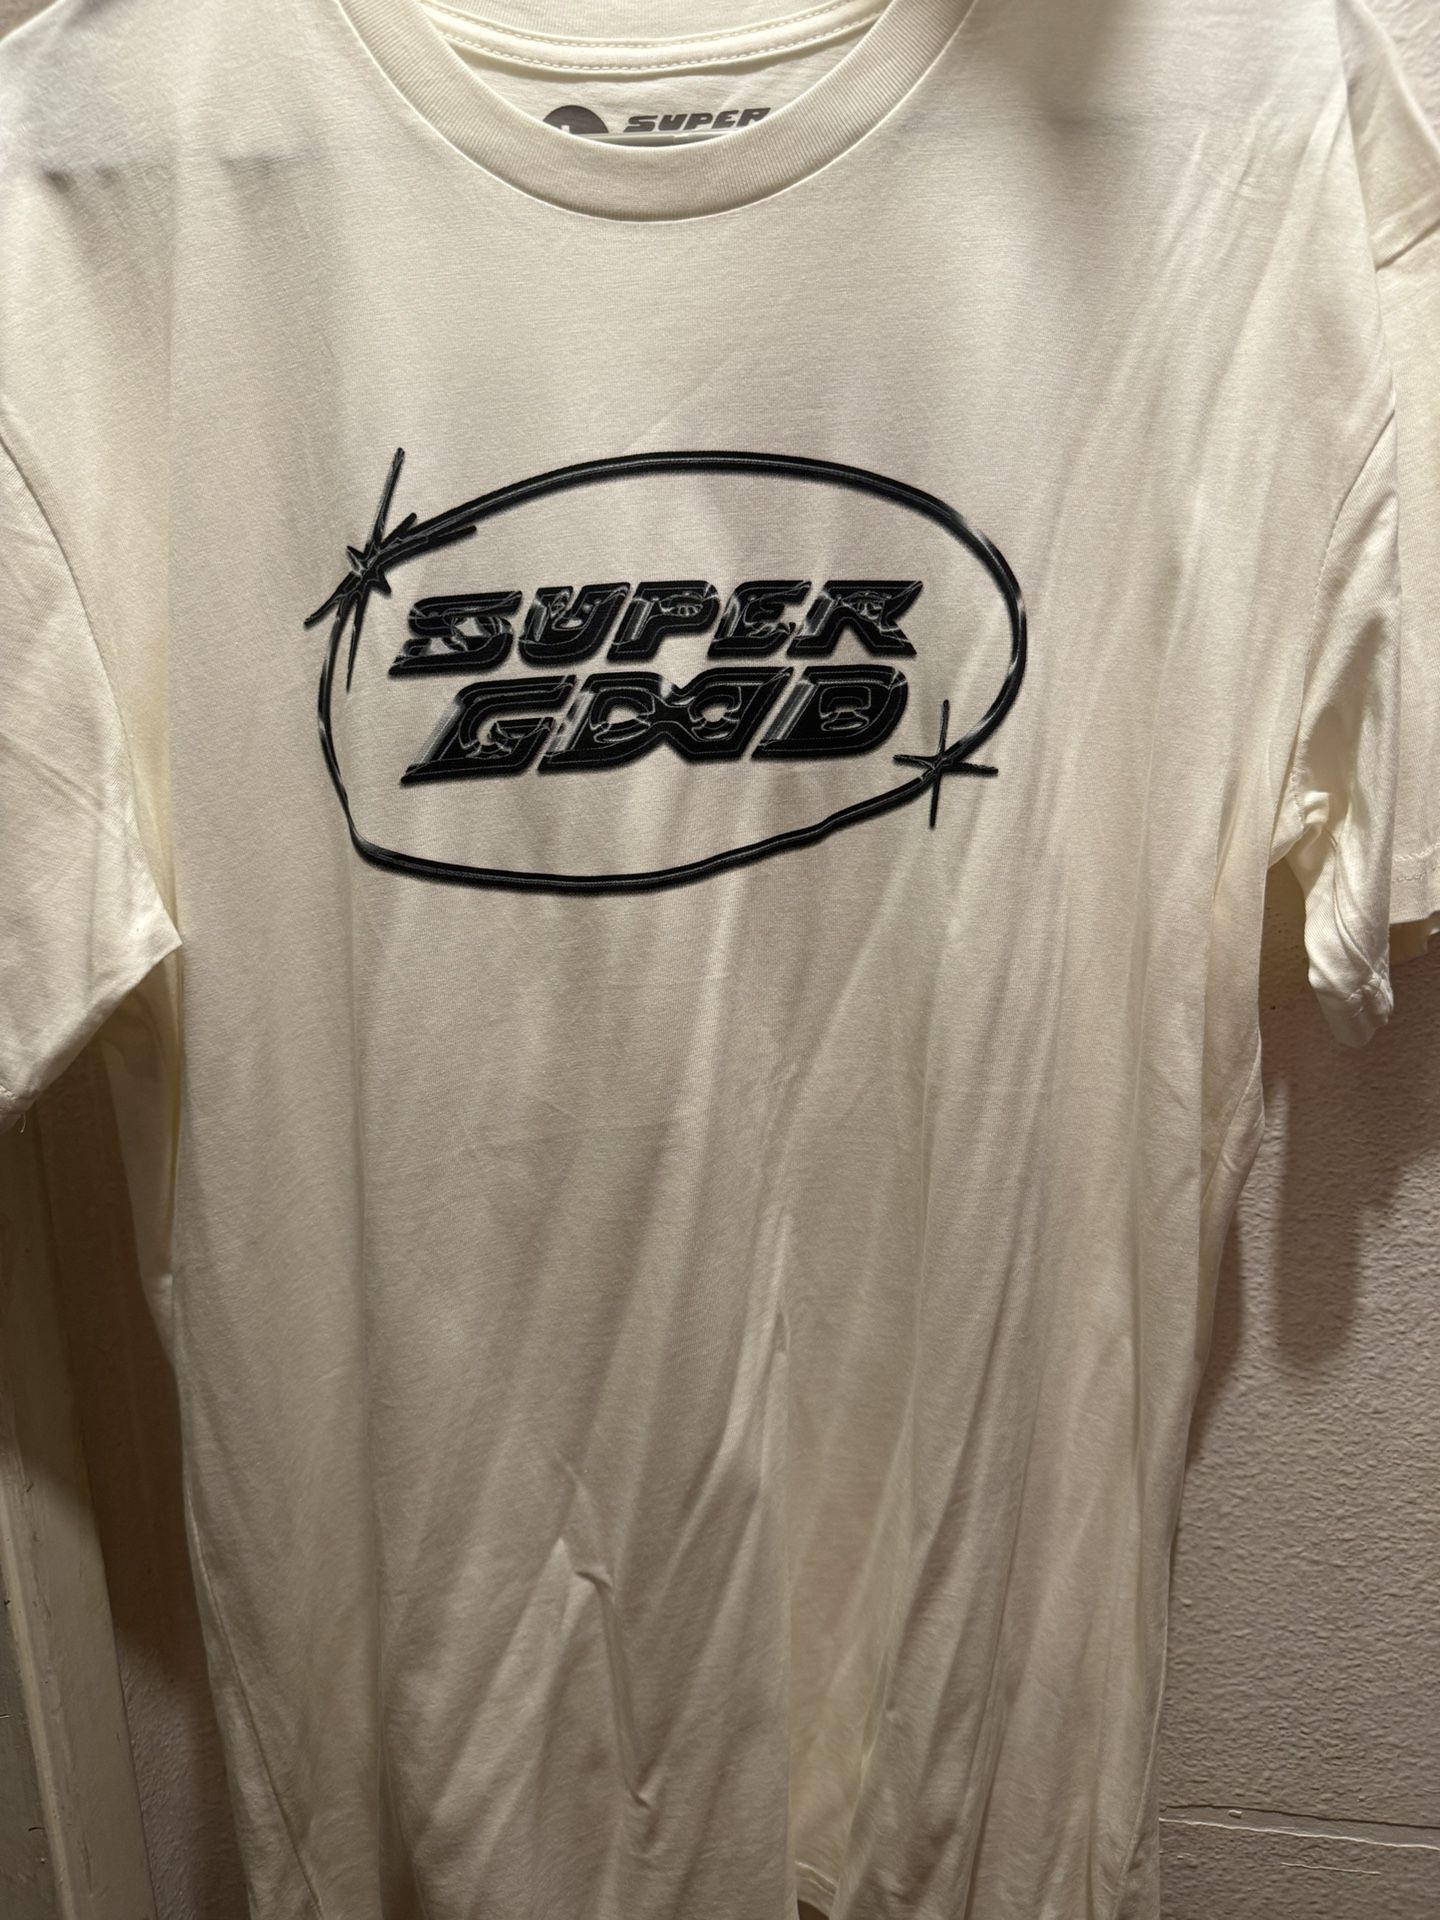 Super Good T Shirt Duckwrth Concert T Shirt